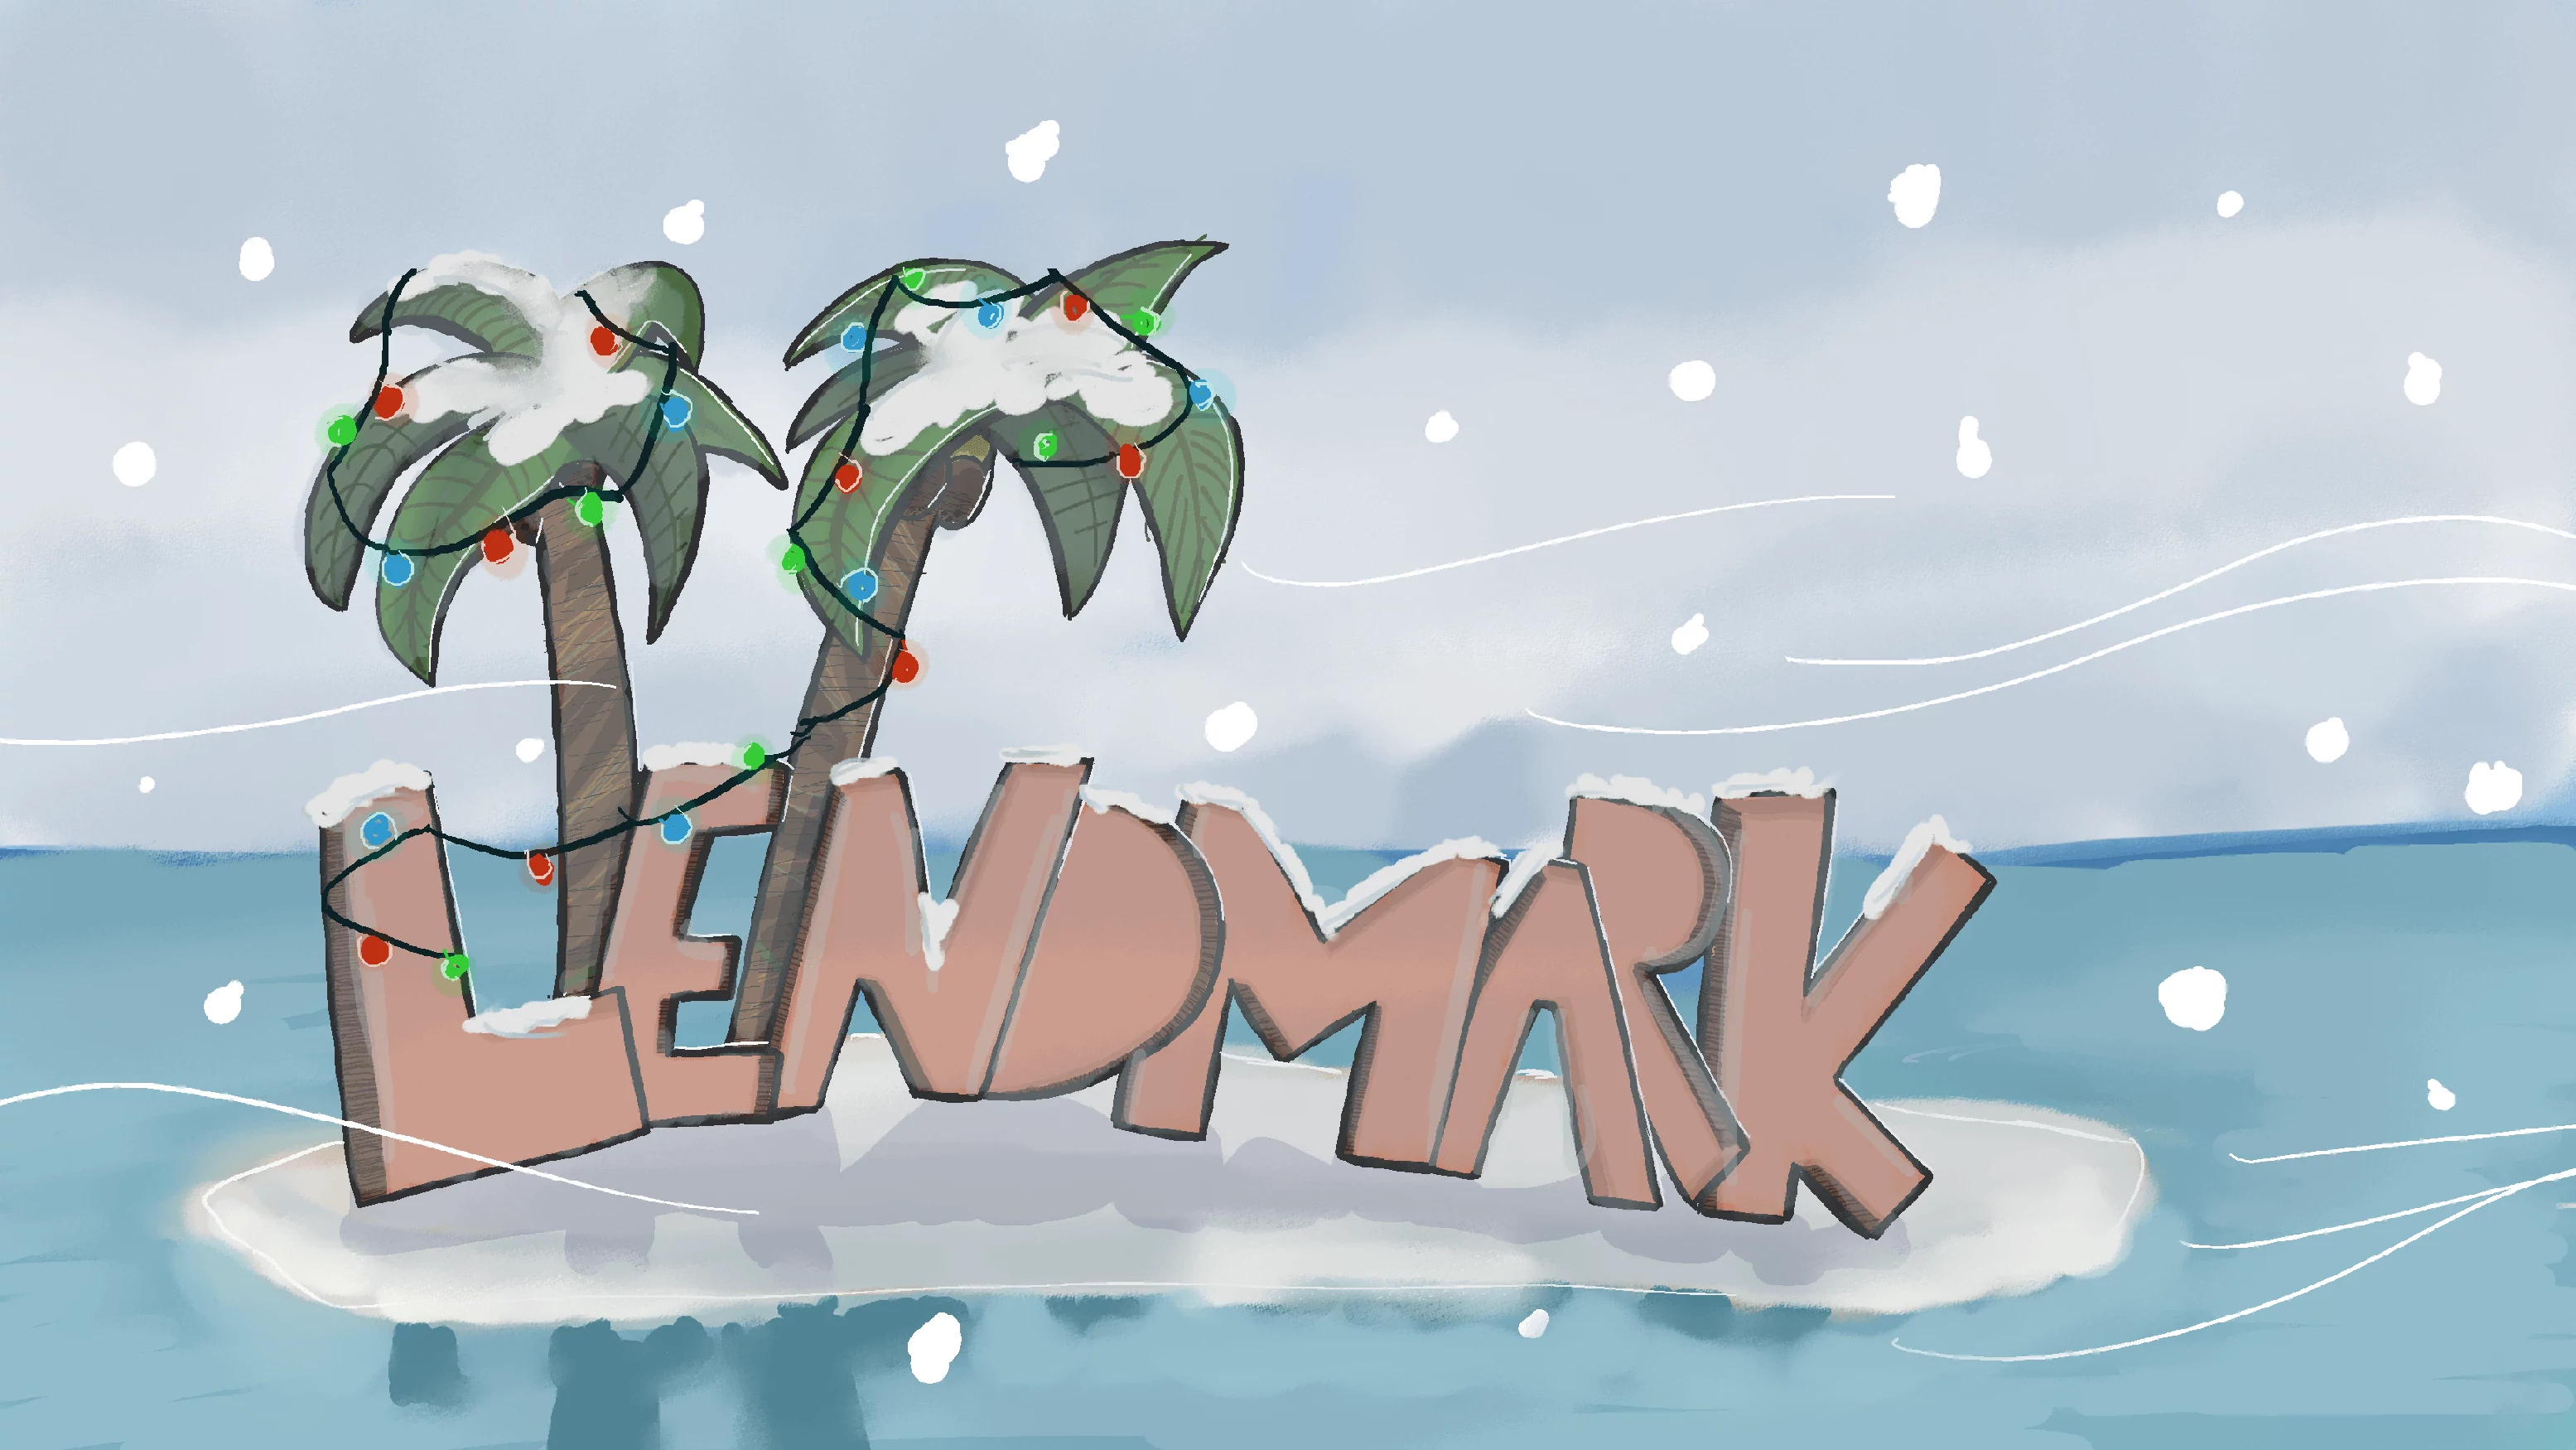 LendMark_background